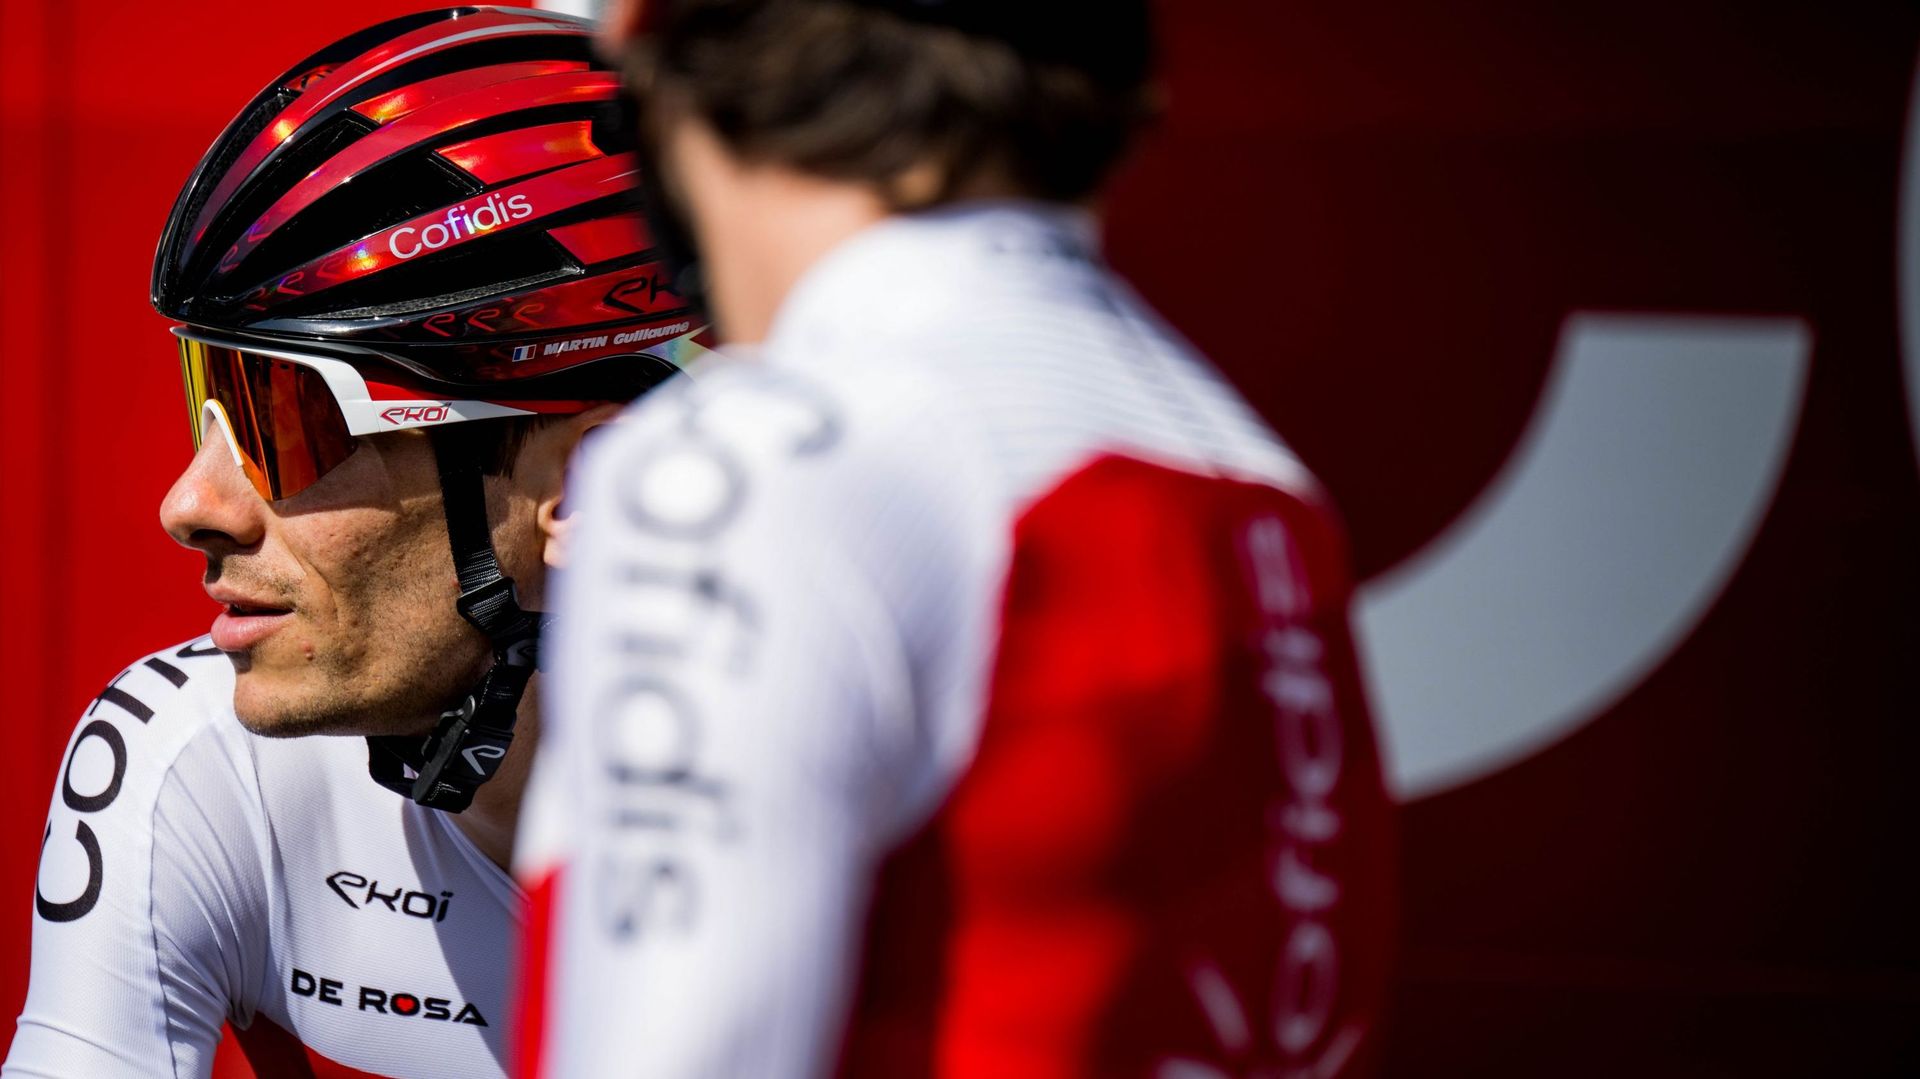 Le Français Guillaume Martin (Cofidis) s’est adjugé la 34e édition du Tour de l’Ain cycliste (2.1) à l’issue de la 3e et dernière étape remportée par l’Espagnol Antonio Pedrero (Movistar) jeudi.